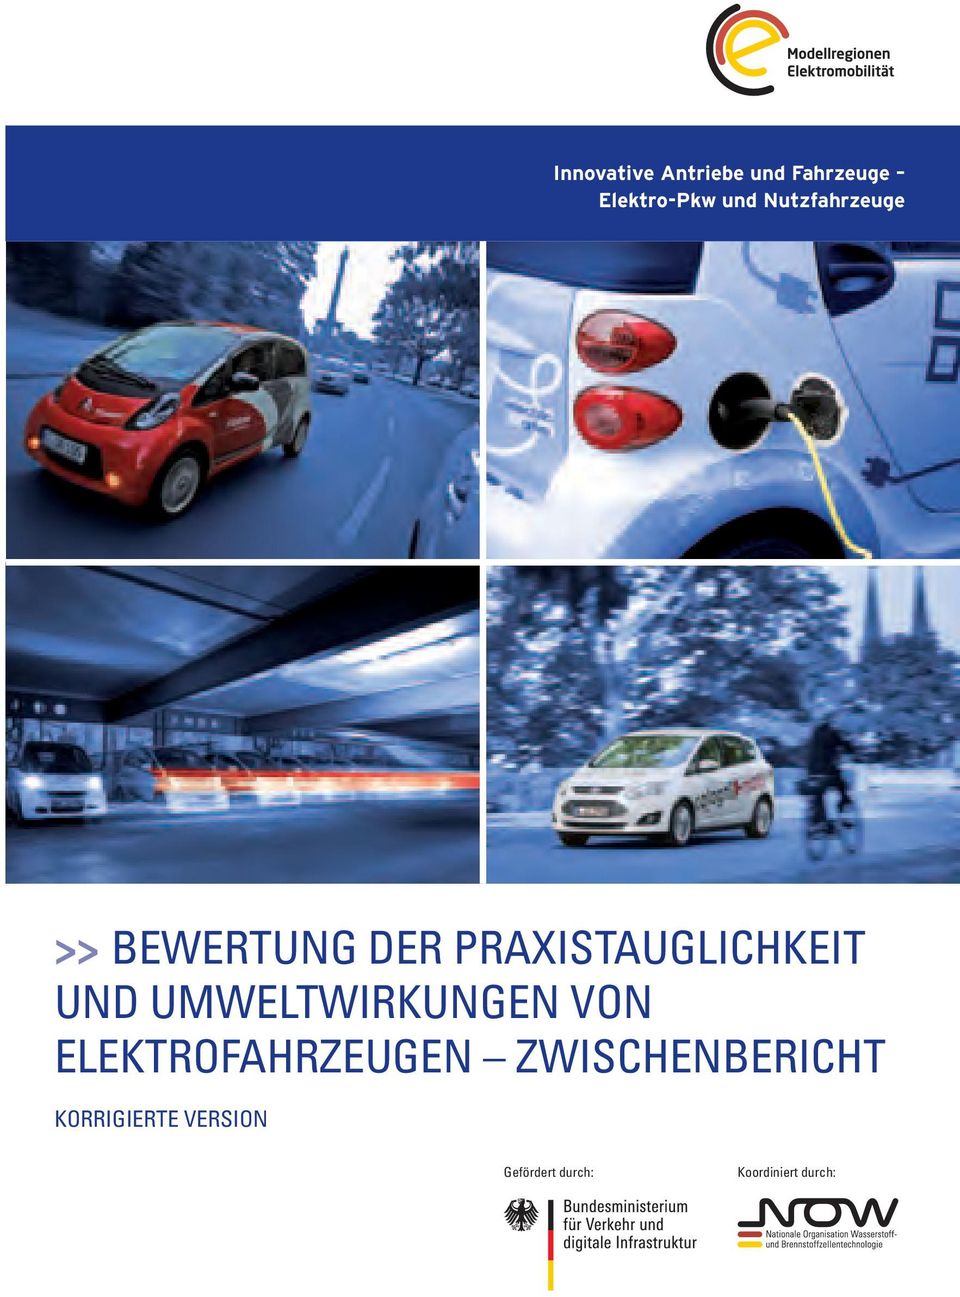 Umweltwirkungen von Elektrofahrzeugen Zwischenbericht